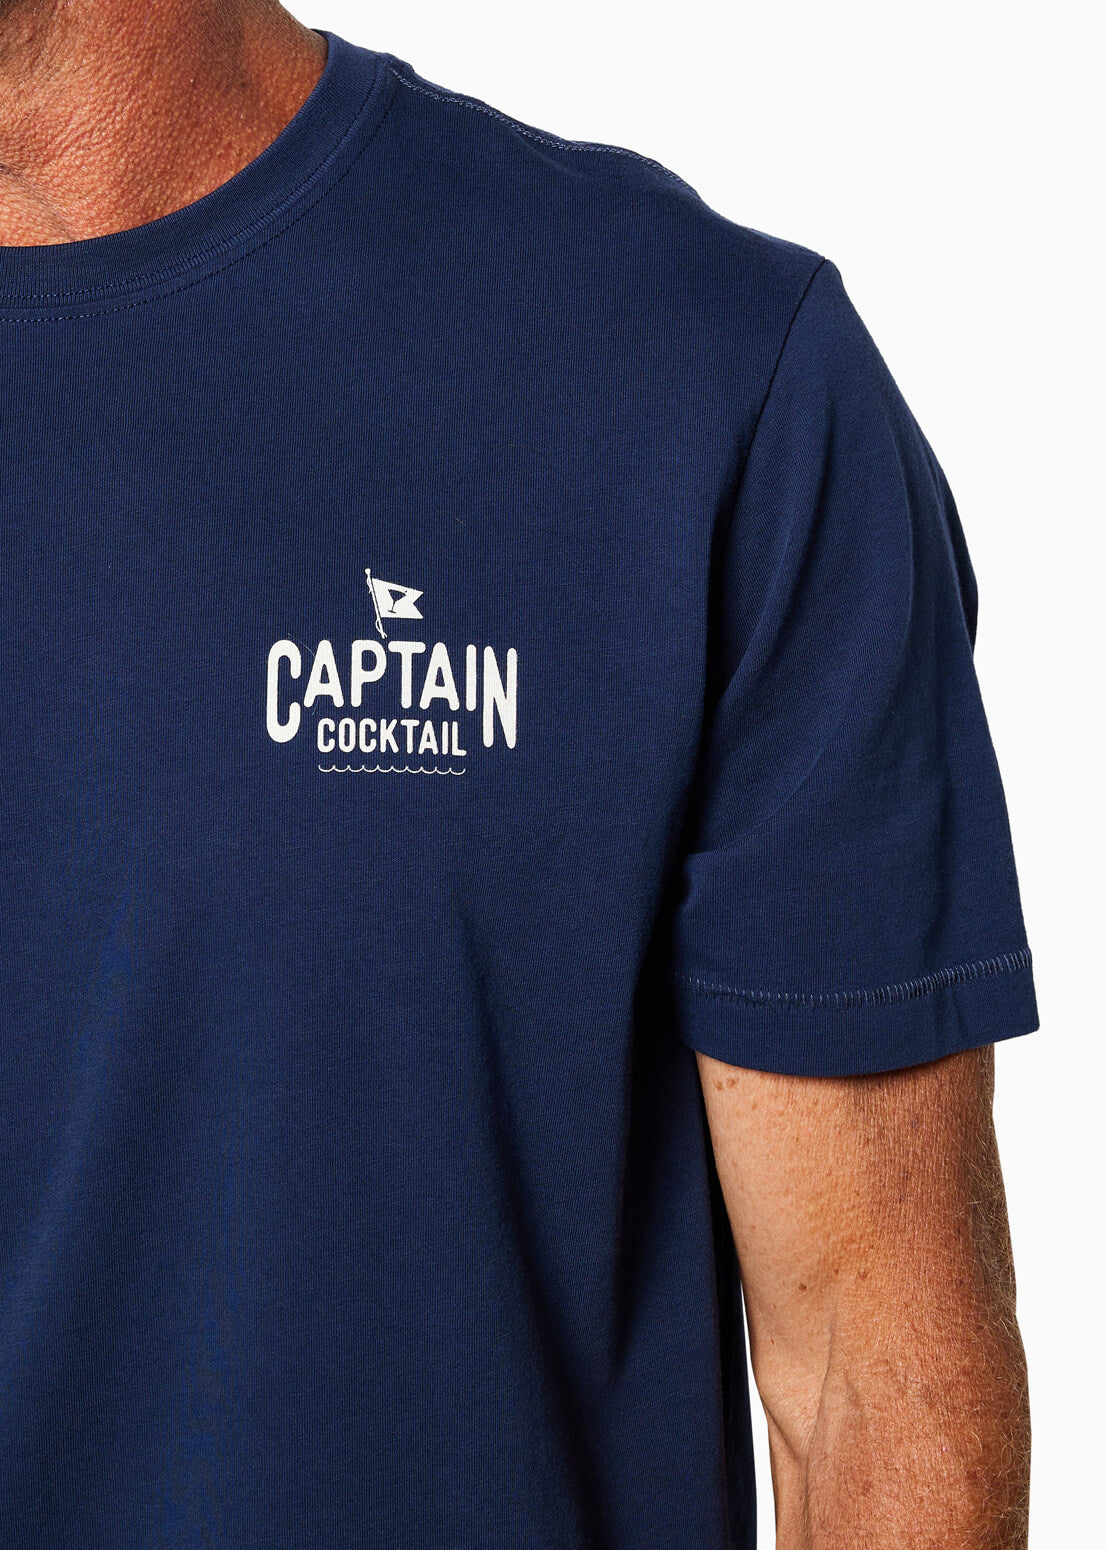 Crusin & Boozin | Short Sleeve T-shirt